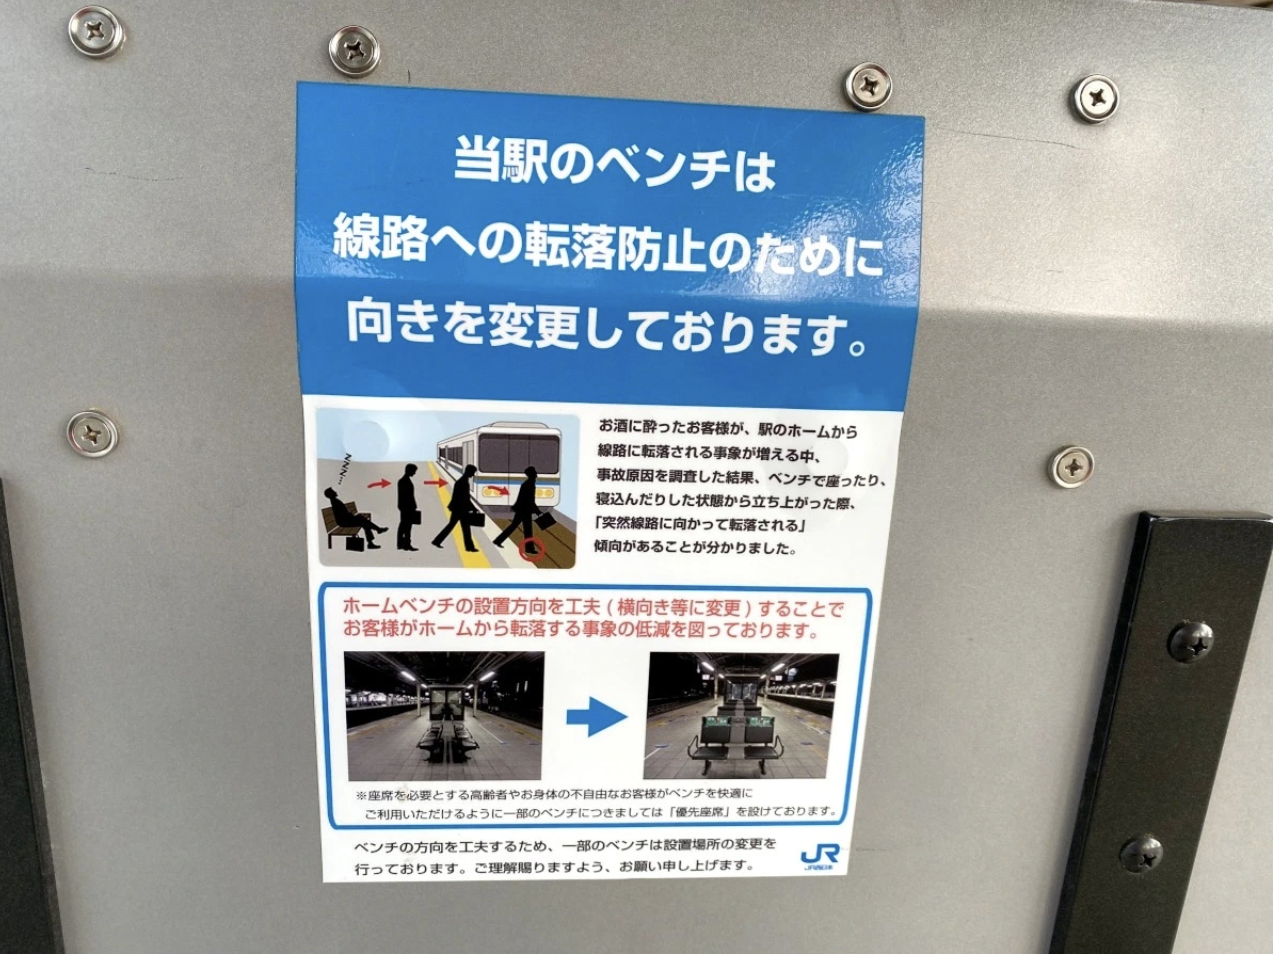 Tinh tế như người Nhật: Lý do thật khiến những chiếc ghế ở nhiều ga tàu không quay mặt về phía đường tàu, hóa ra là để bảo vệ hành khách - Ảnh 4.